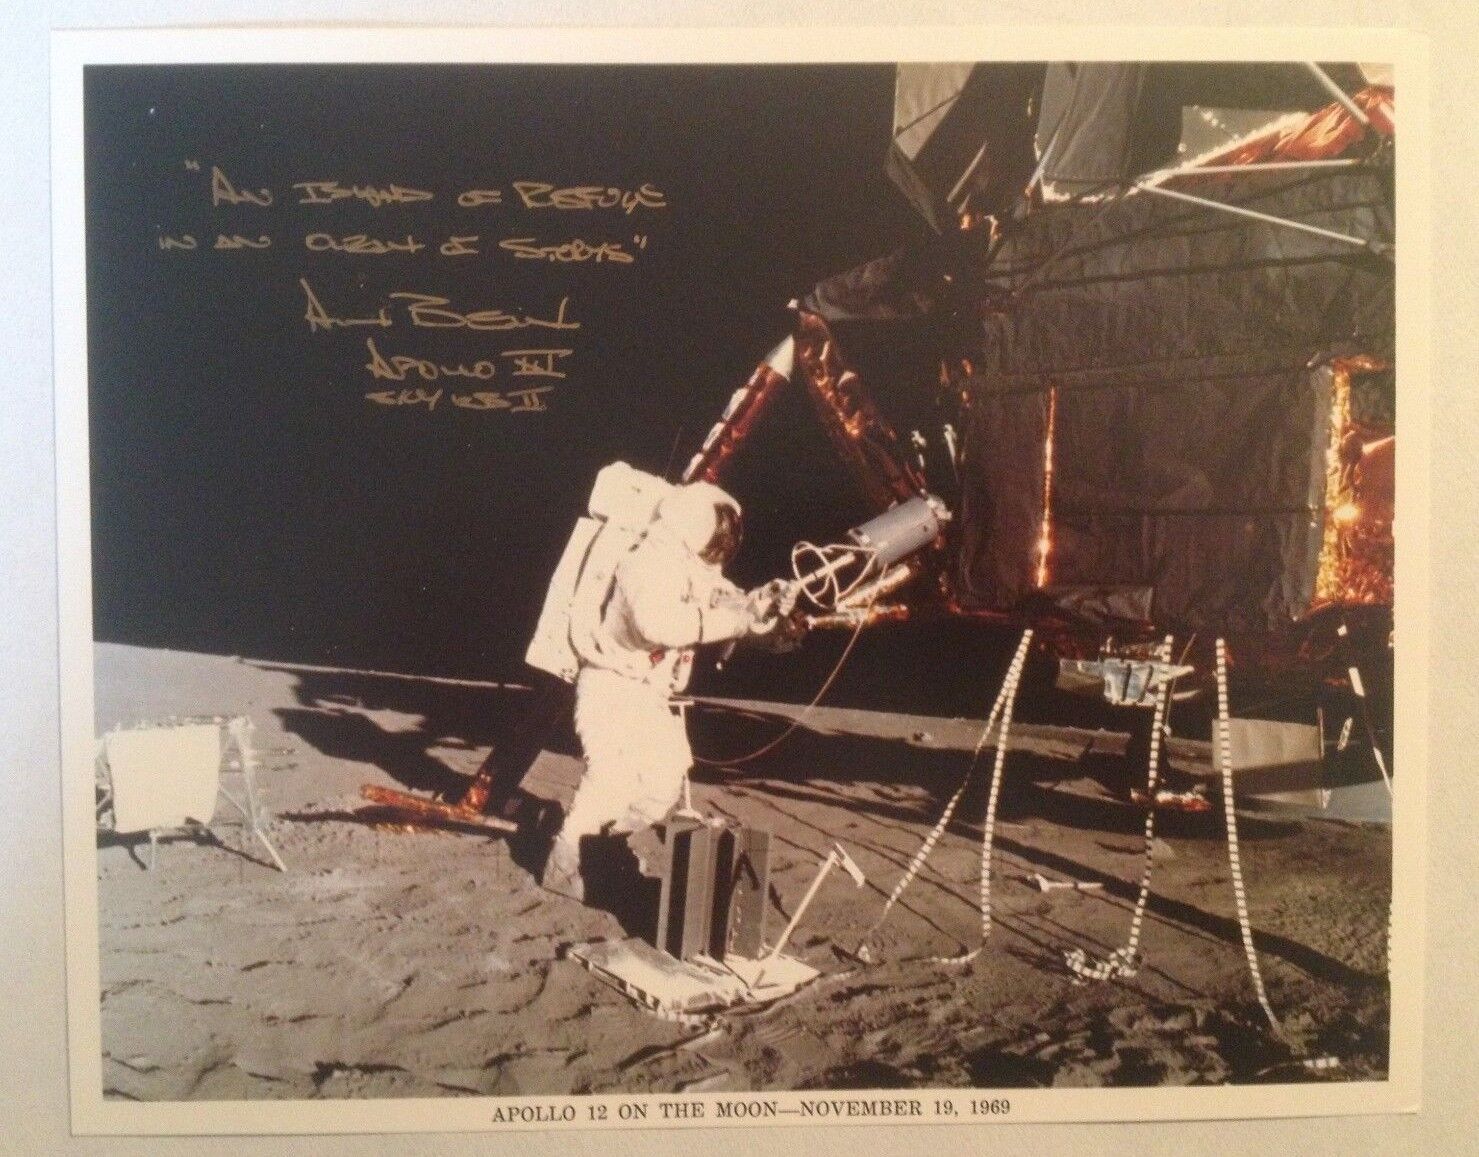 Astronaut Alan Bean Signed Official NASA Apollo 12 EVA Photograph on the Moon